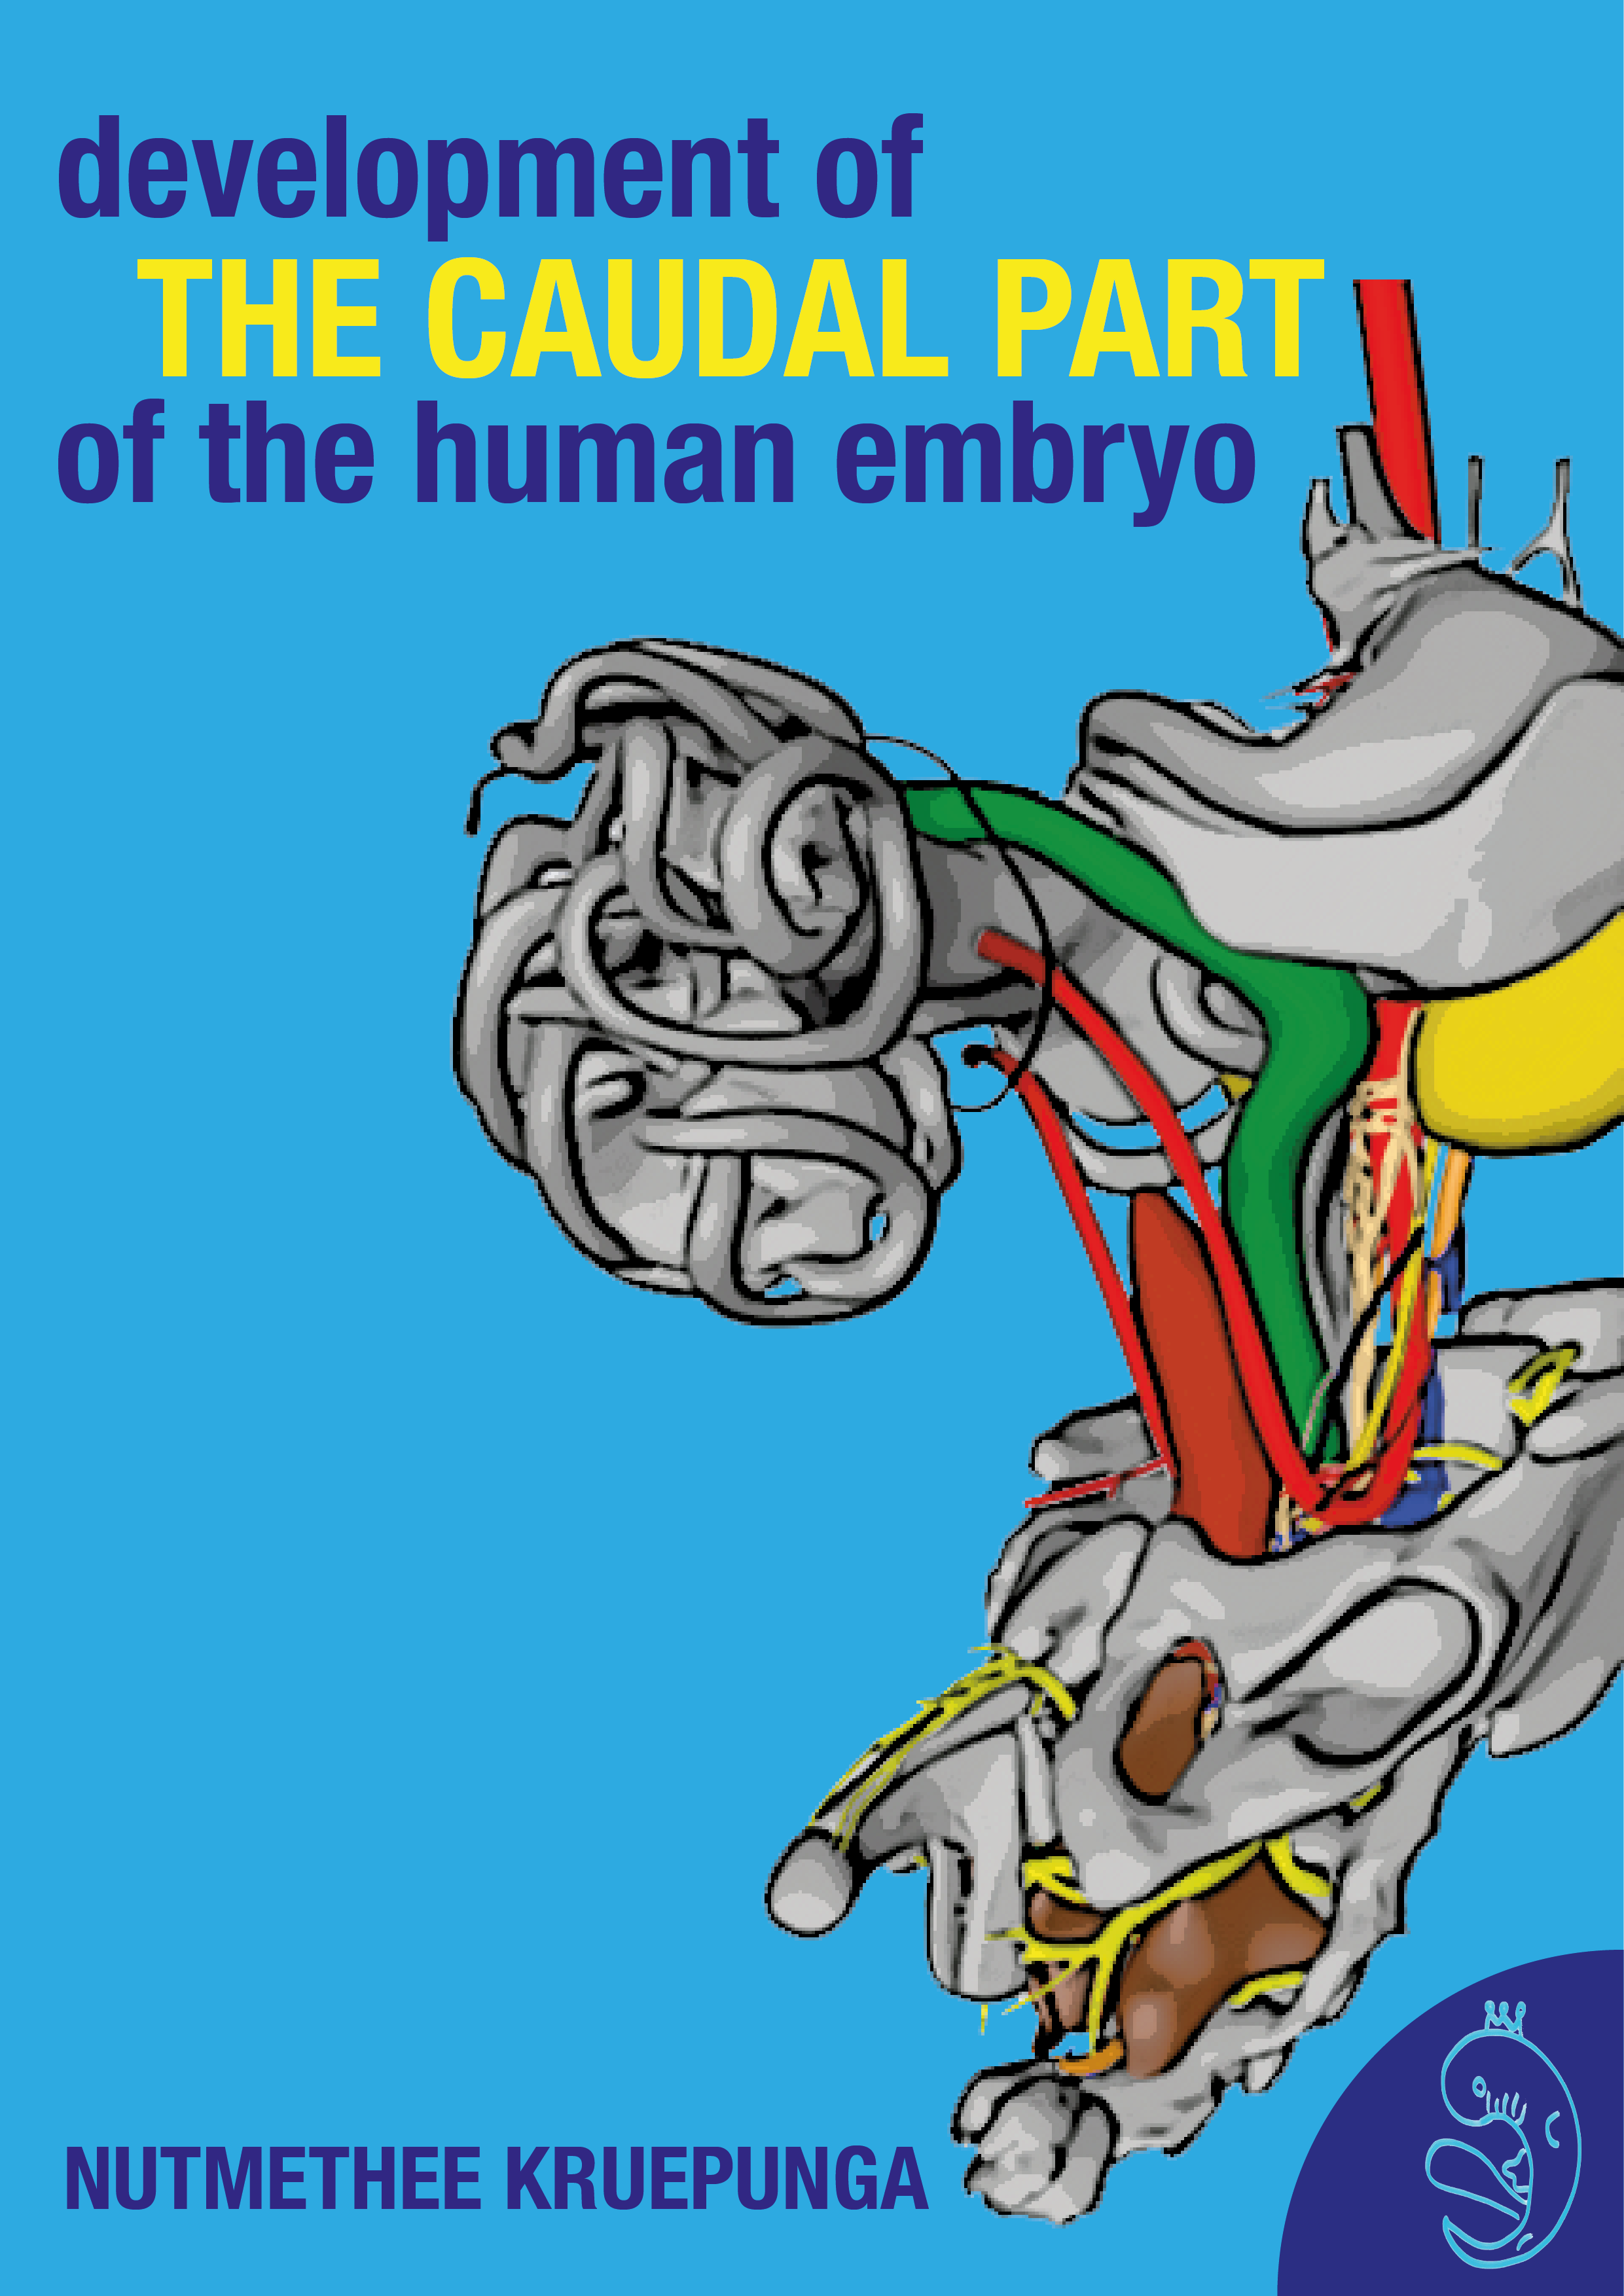 De verkenning van het caudale gebied van menselijke embryo's